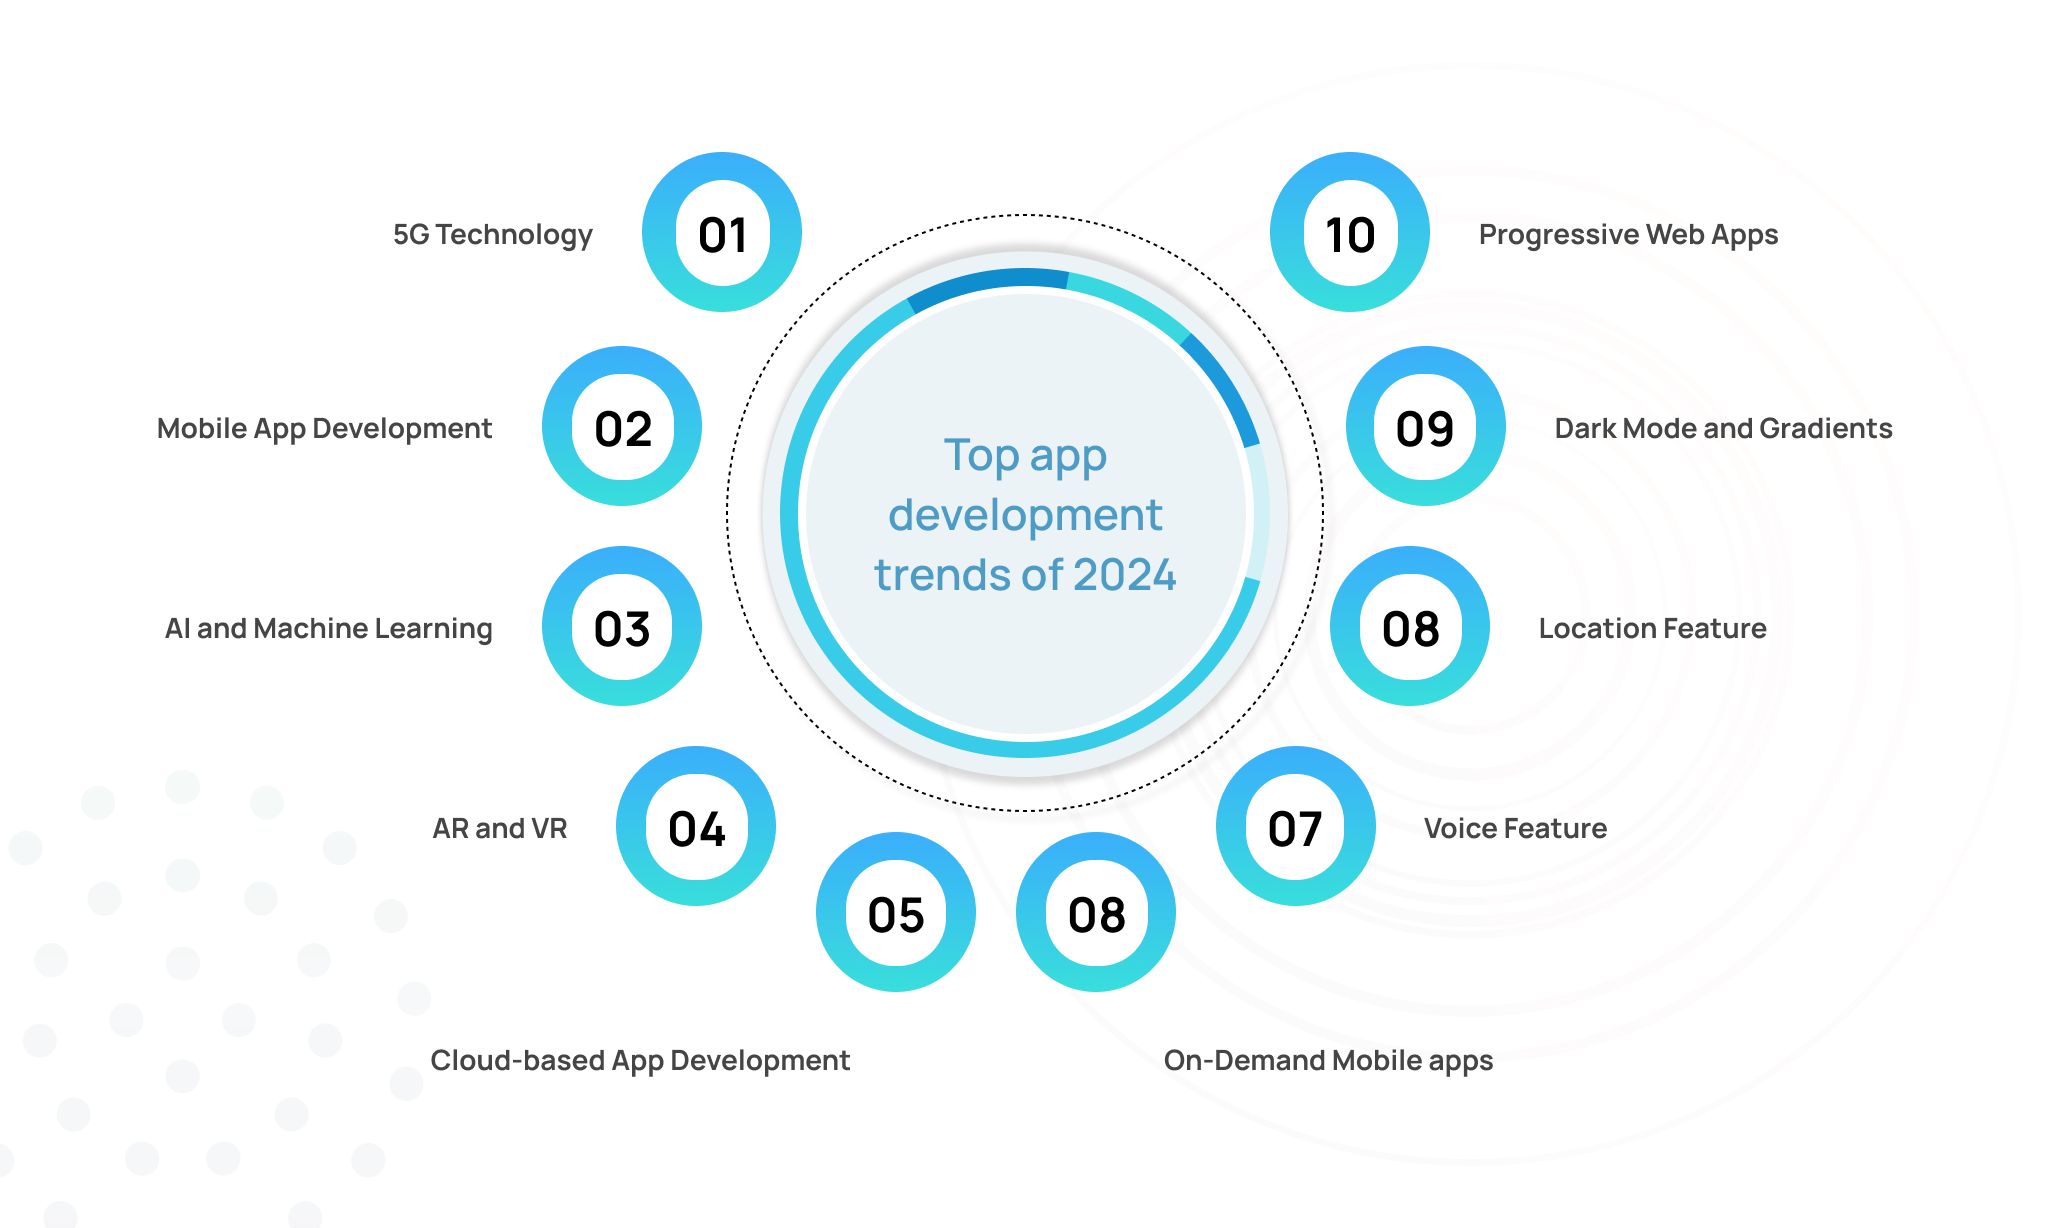 Top App Development Trends of 2024